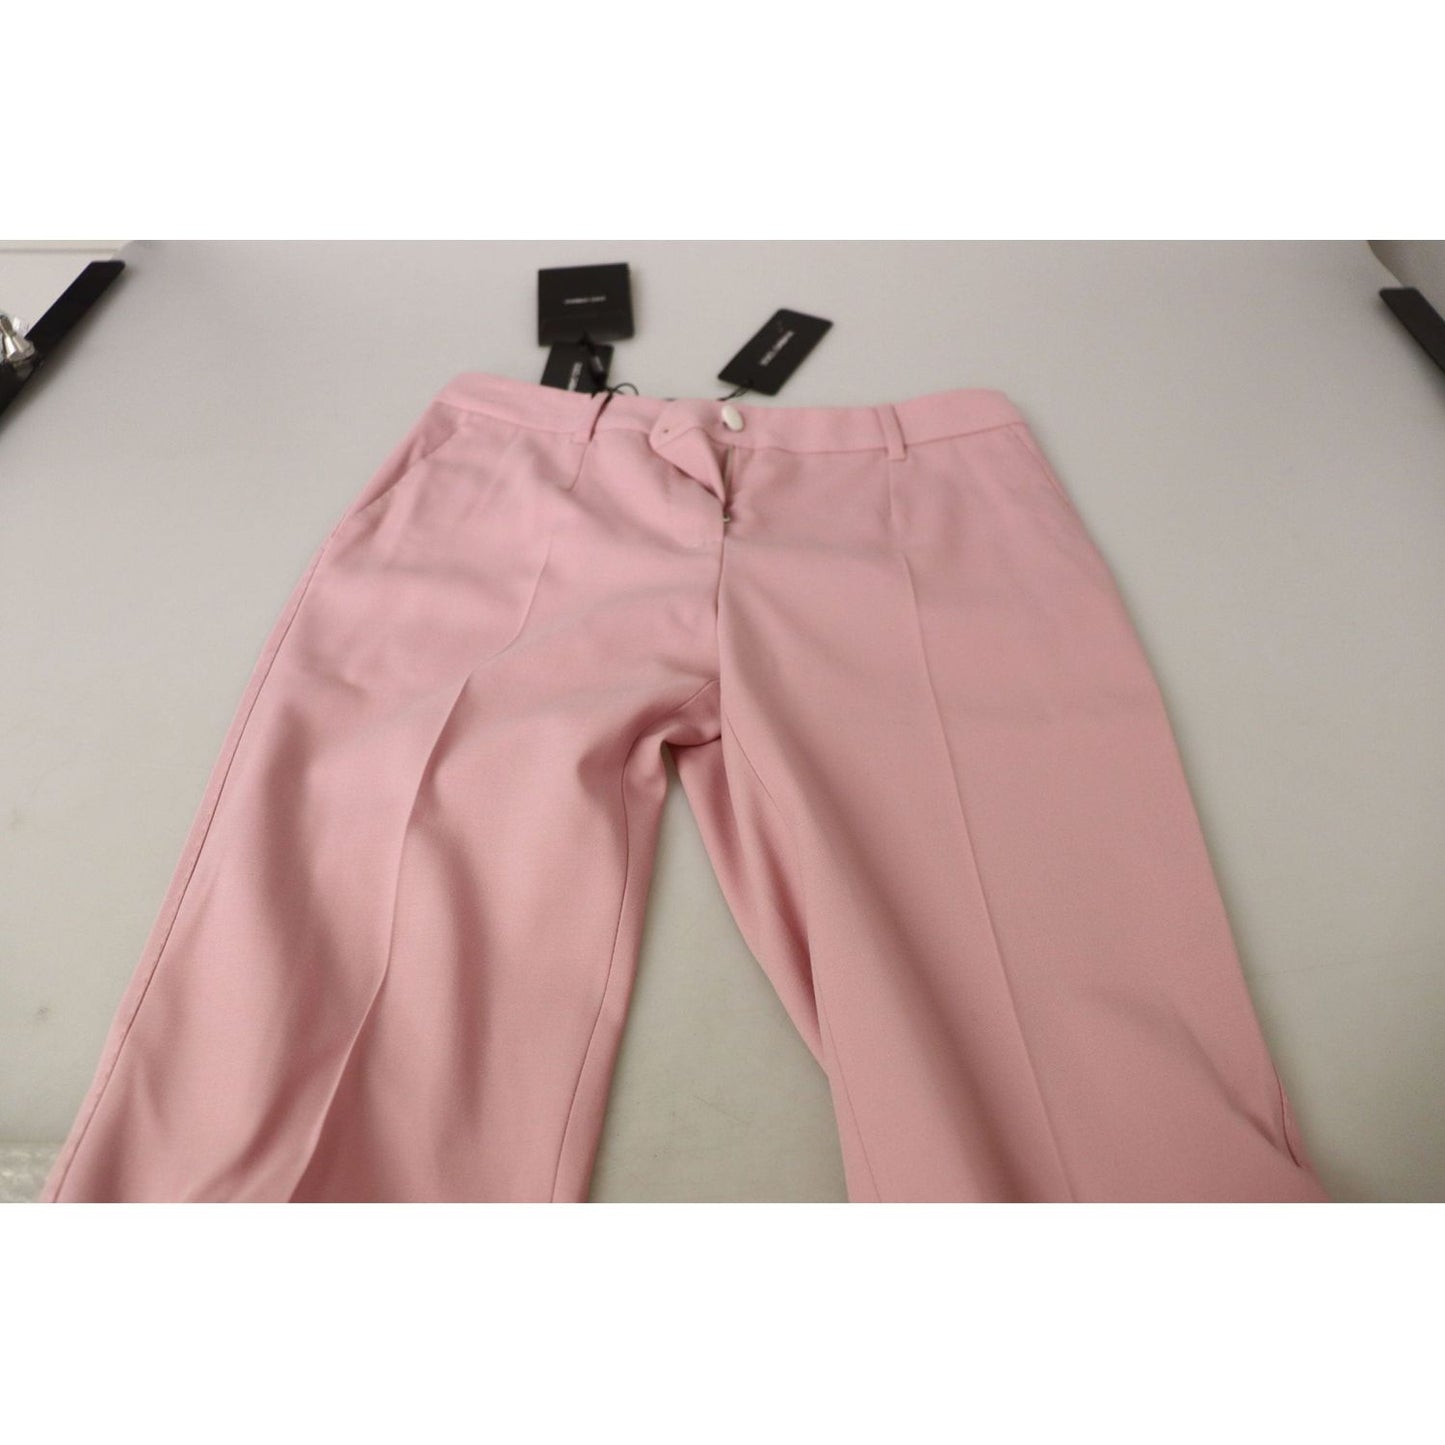 Dolce & Gabbana Chic MidWaist Virgin Wool Pink Pants pink-mid-waist-straight-leg-trouser-pants